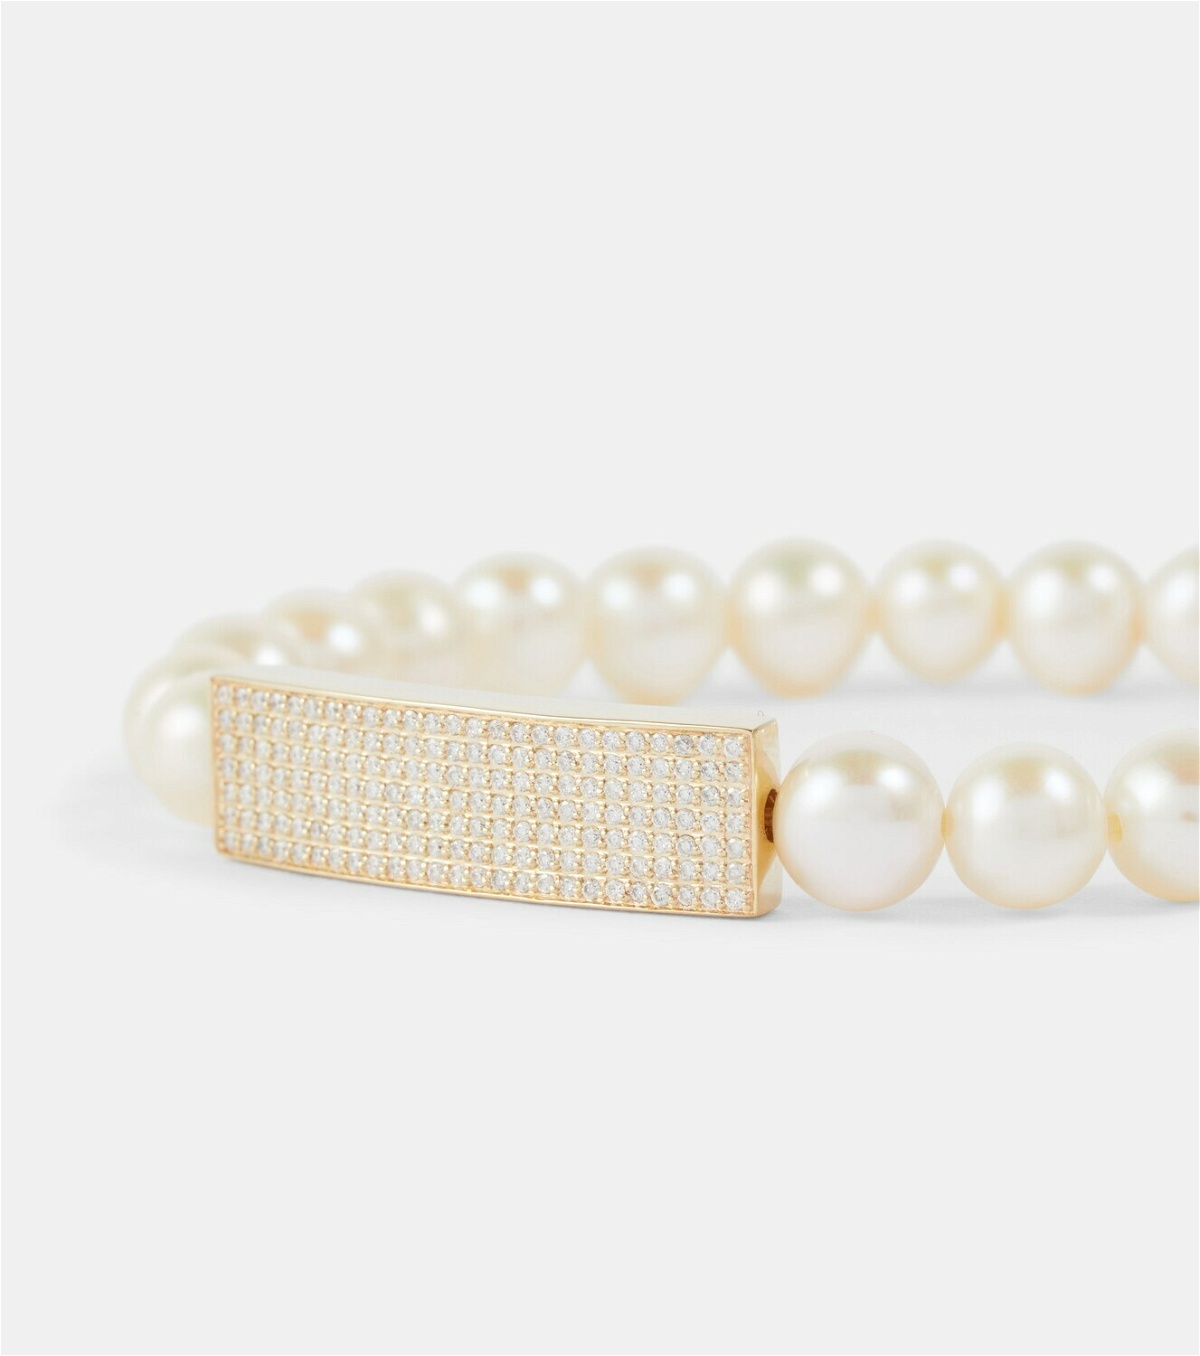 Sydney Evan 14kt gold bracelet with pearls